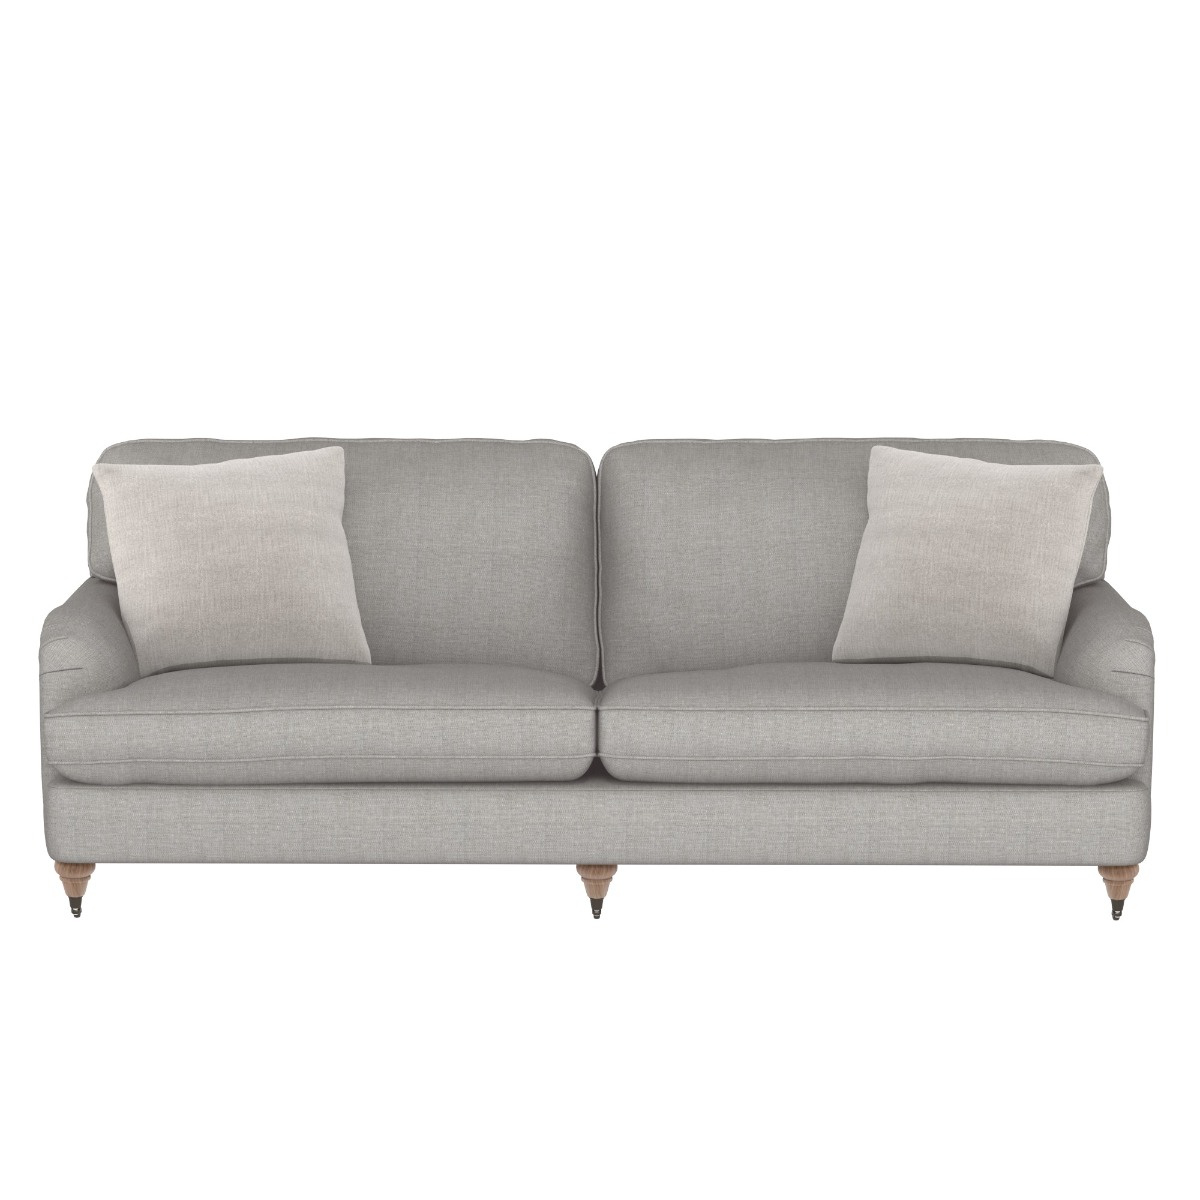 Sloane Extra Large Sofa, Grey Fabric | Barker & Stonehouse